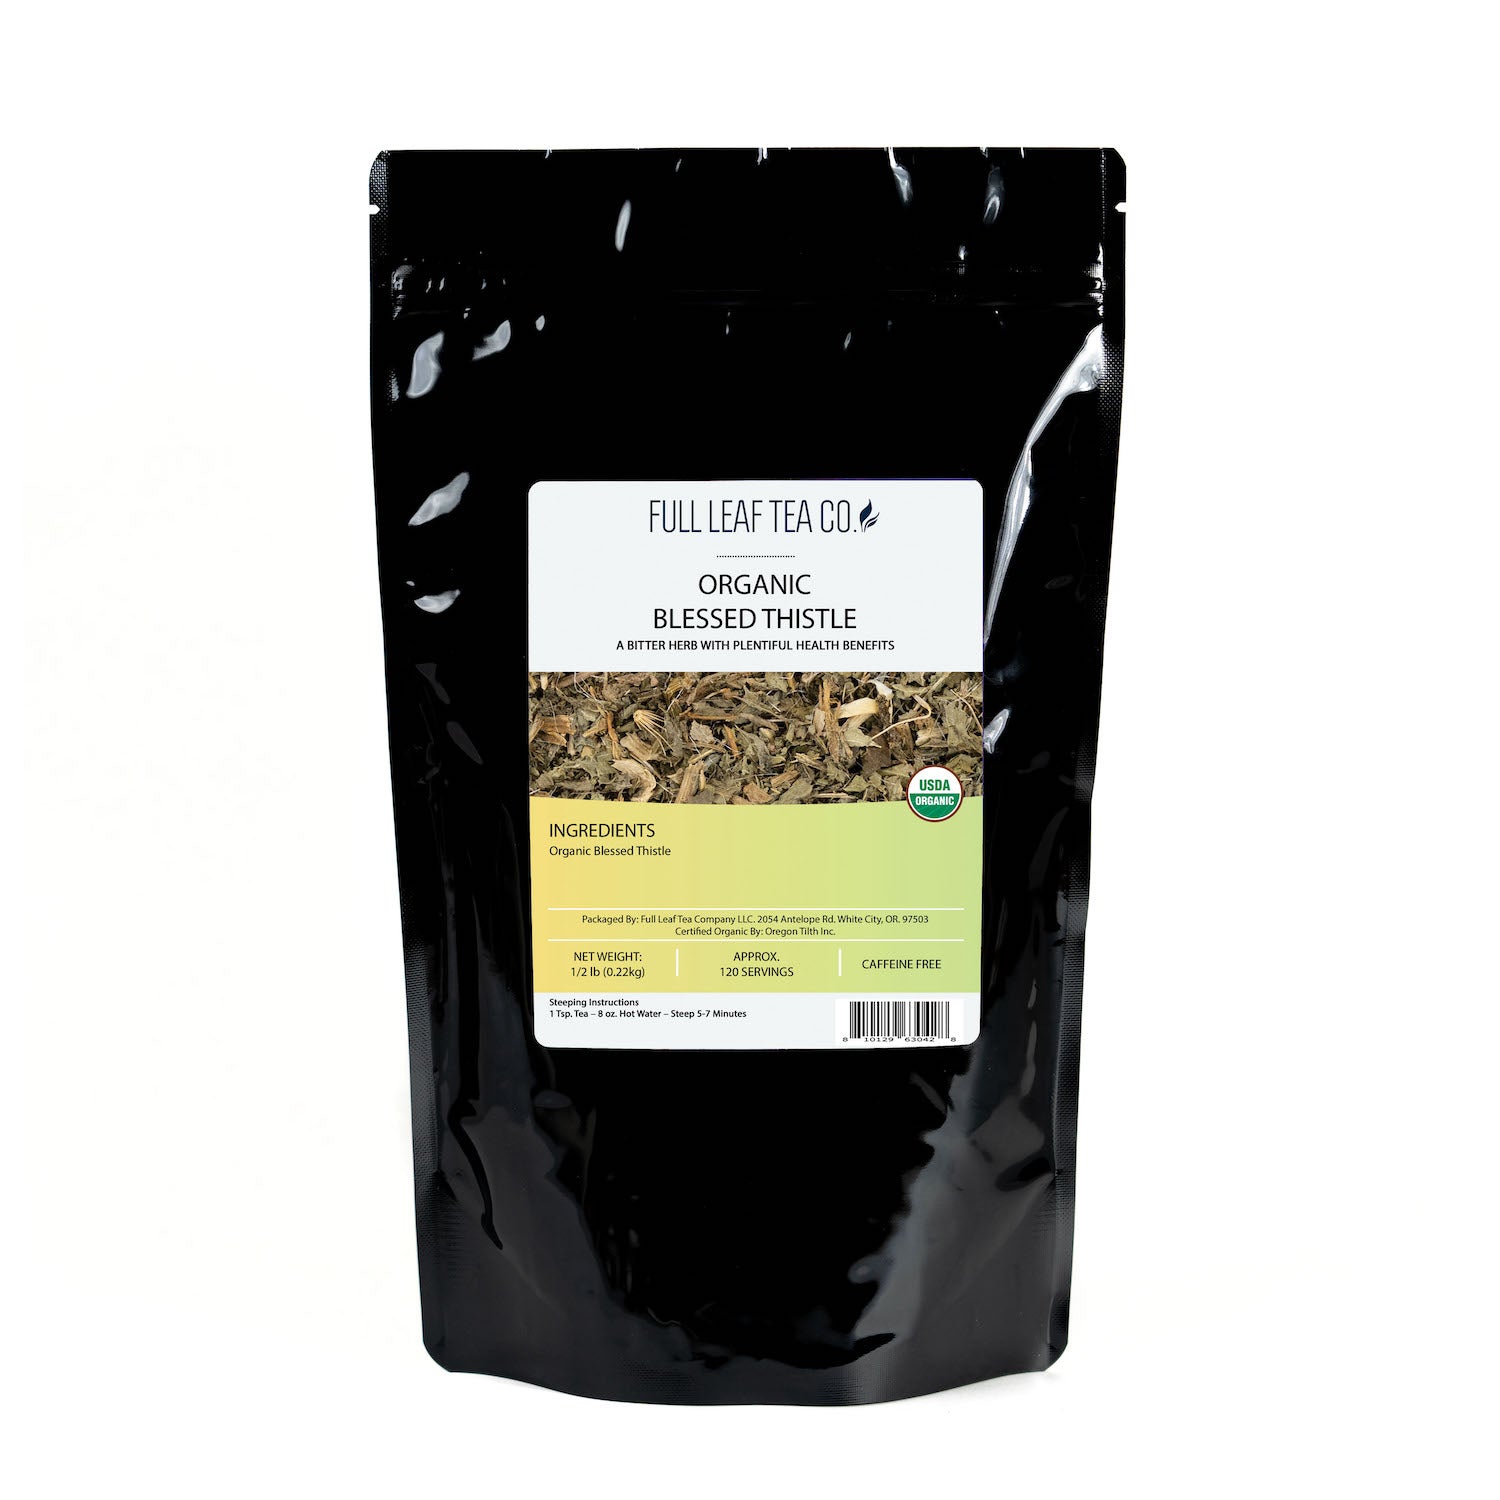 Organic Blessed Thistle - Loose Leaf Tea - Full Leaf Tea Company